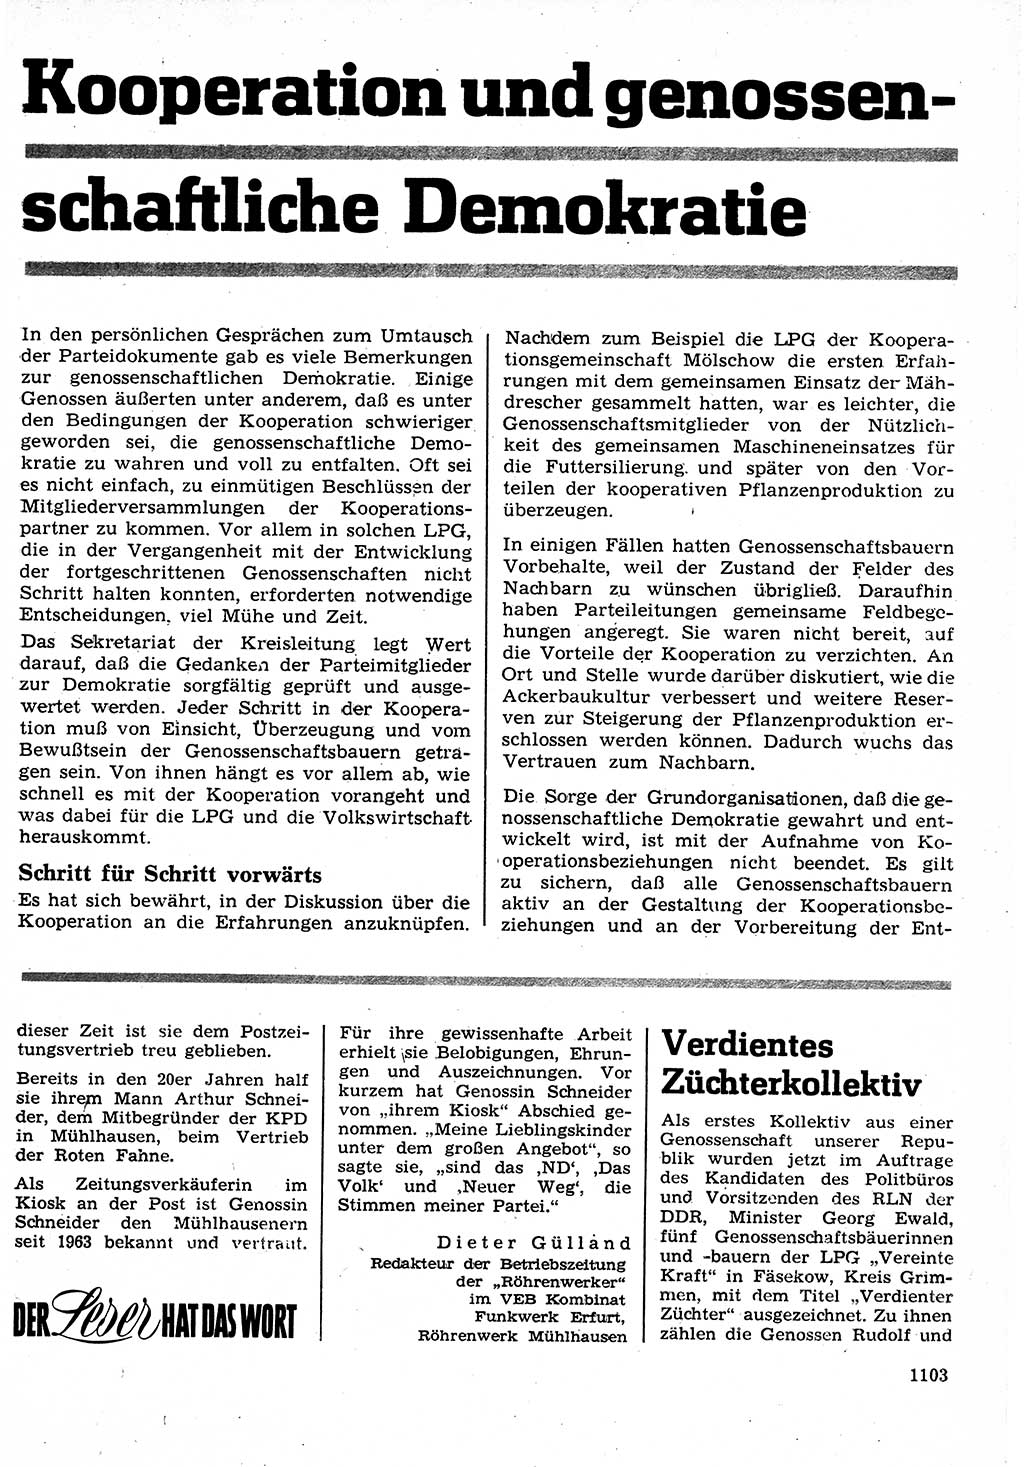 Neuer Weg (NW), Organ des Zentralkomitees (ZK) der SED (Sozialistische Einheitspartei Deutschlands) für Fragen des Parteilebens, 25. Jahrgang [Deutsche Demokratische Republik (DDR)] 1970, Seite 1103 (NW ZK SED DDR 1970, S. 1103)